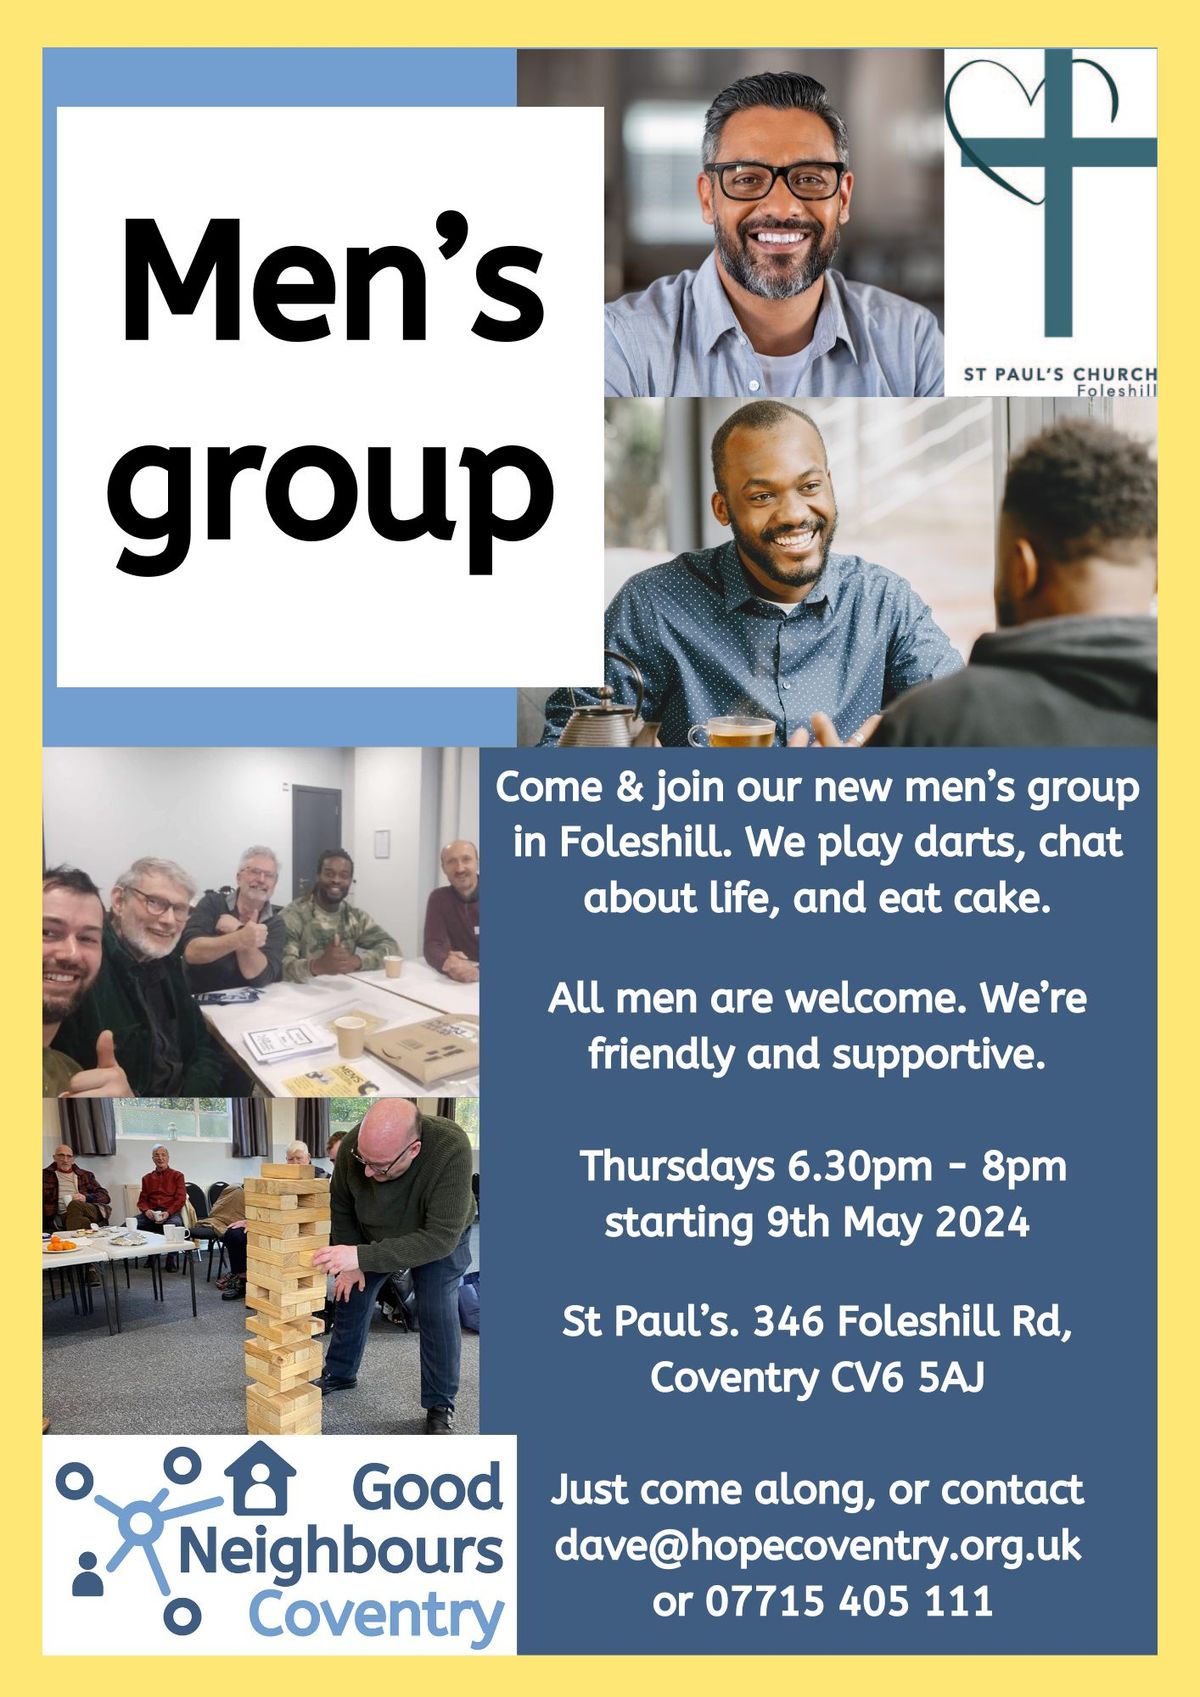 NEW men's group - Foleshill - evenings